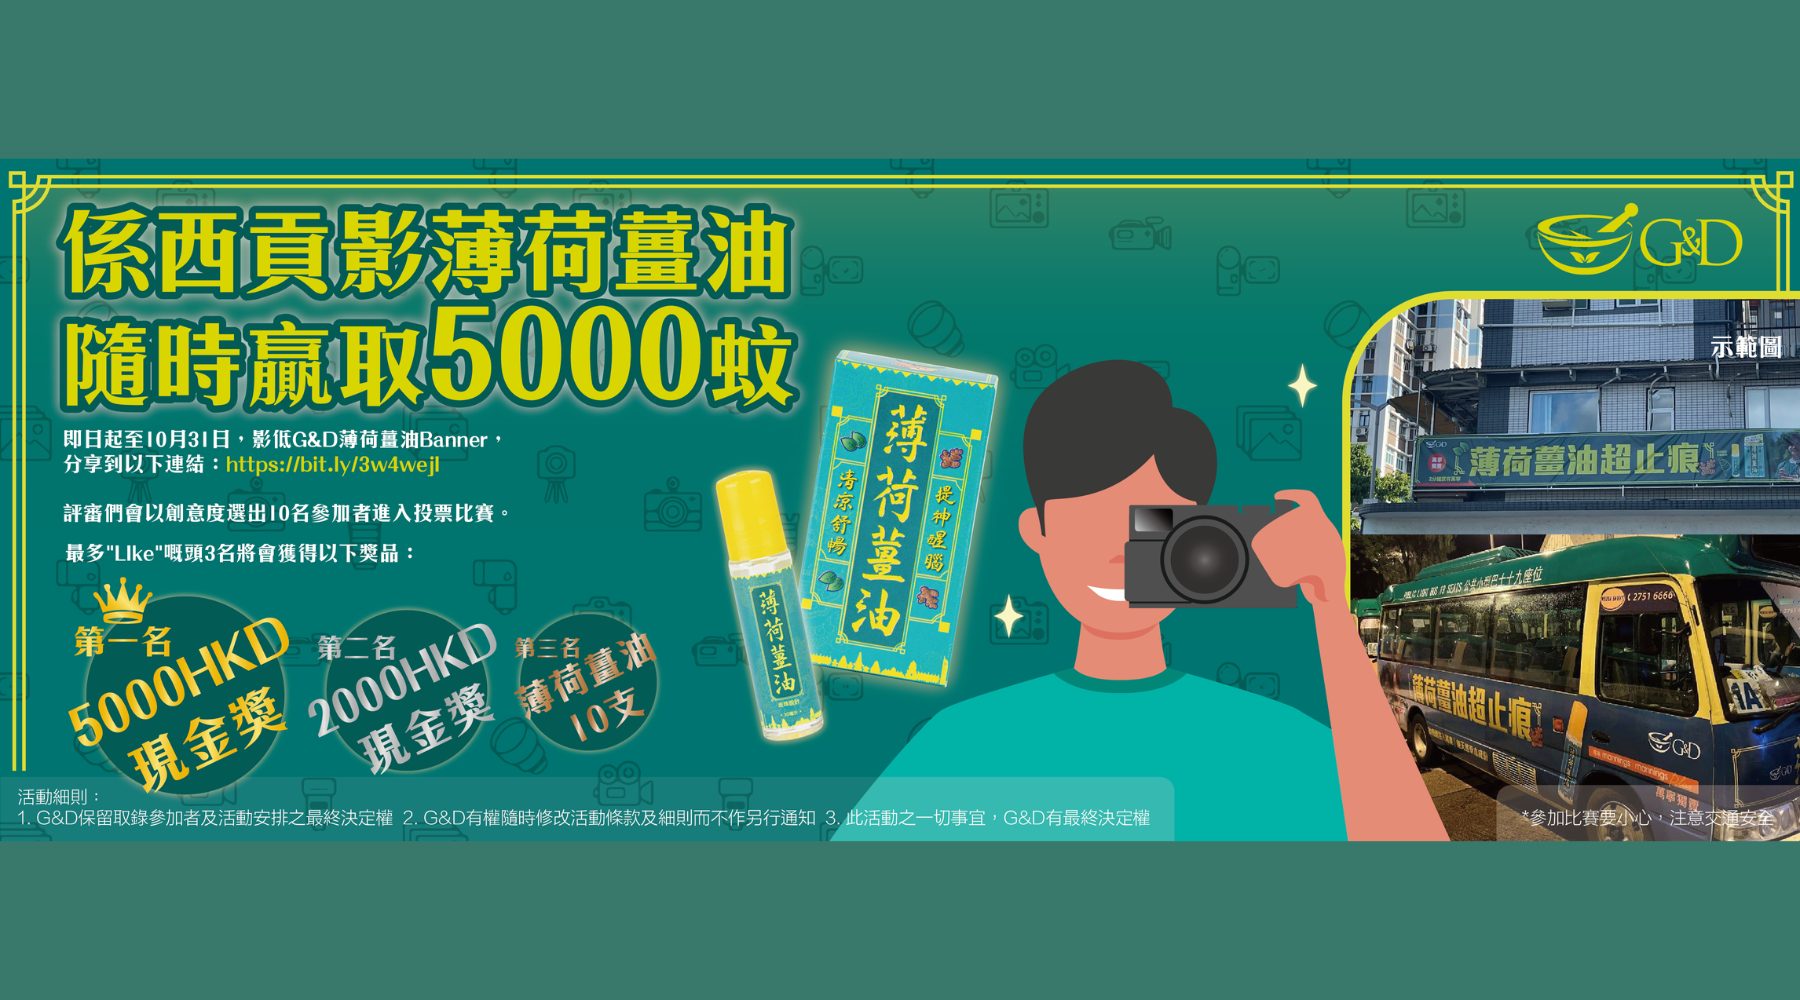 G&D 古丹薄荷薑油攝影比賽正式開鑼 📸【2022-10-31截止】